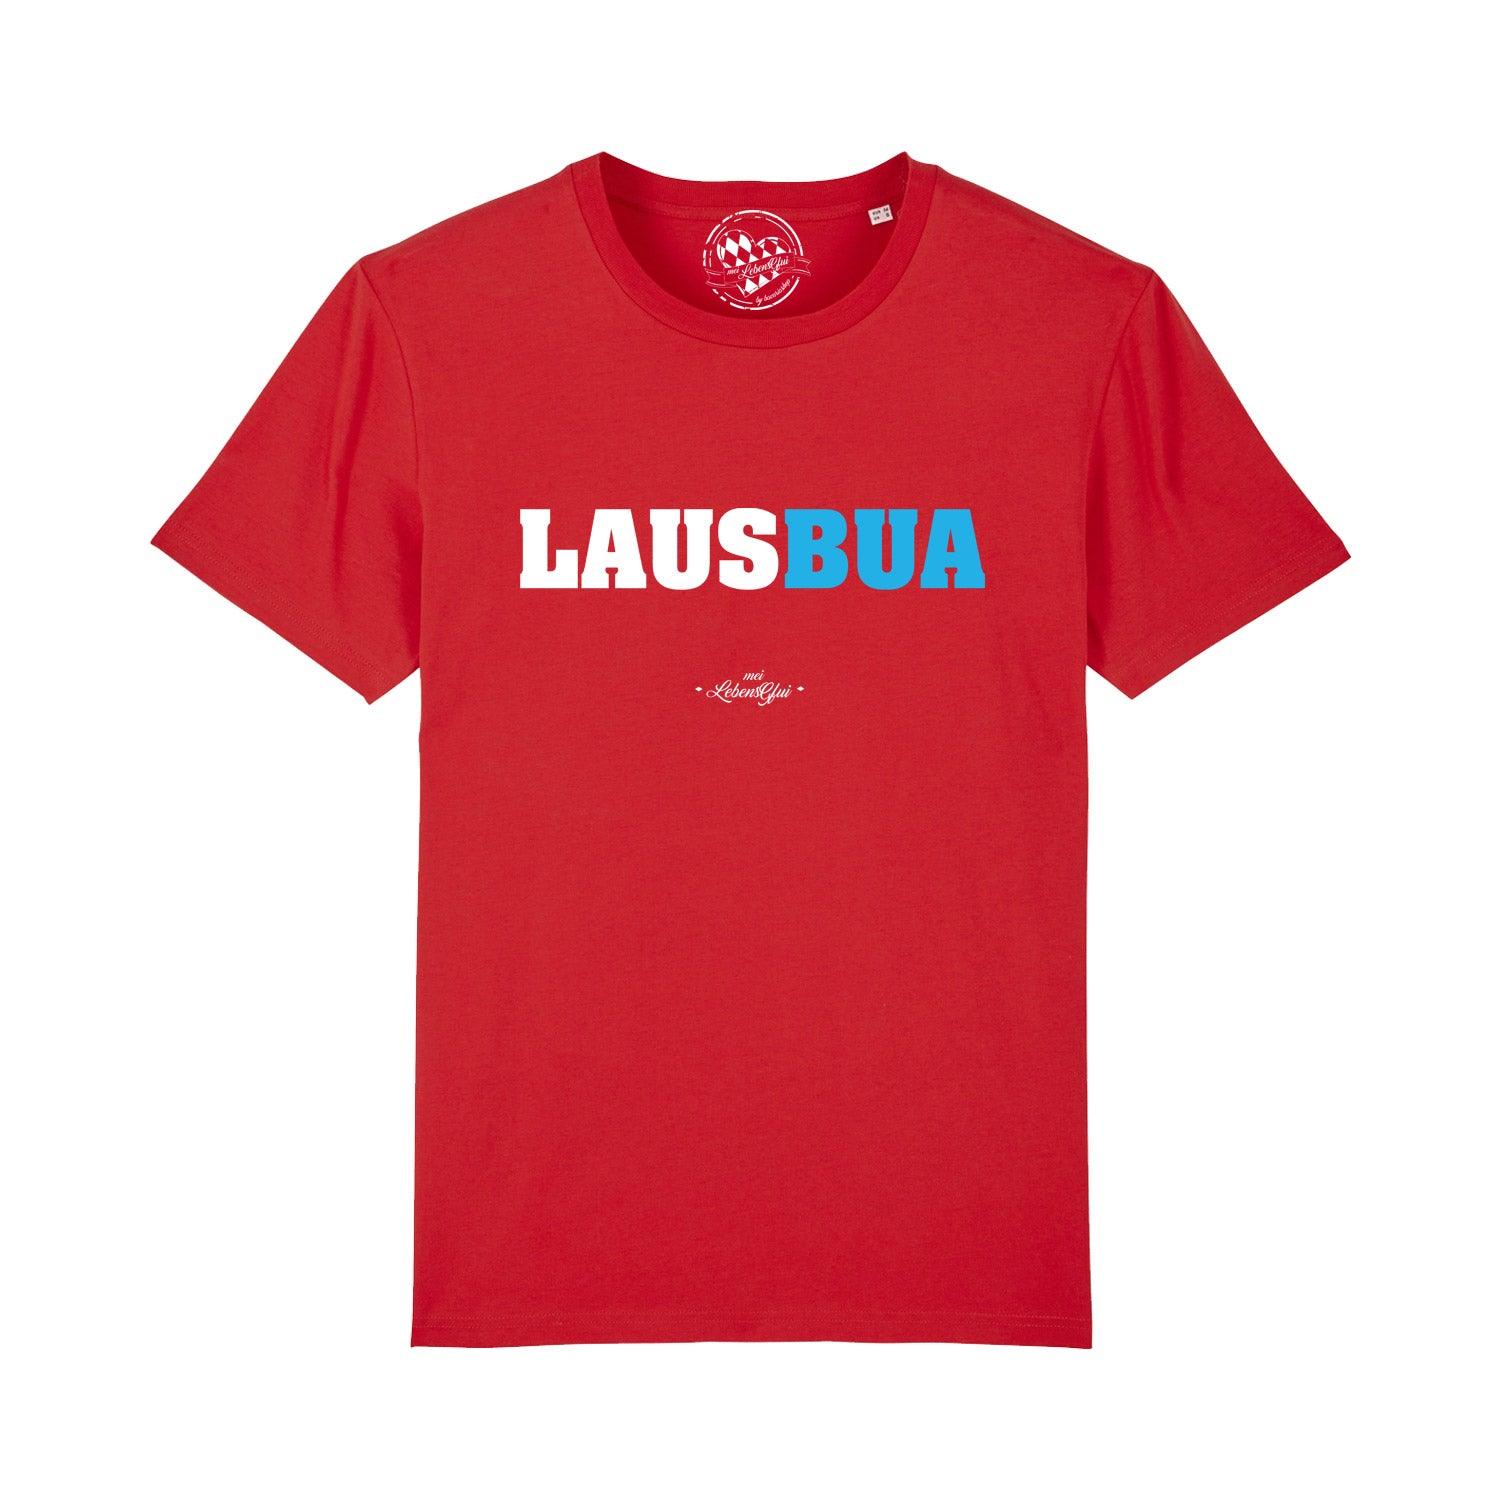 Herren T-Shirt "Lausbua" - bavariashop - mei LebensGfui